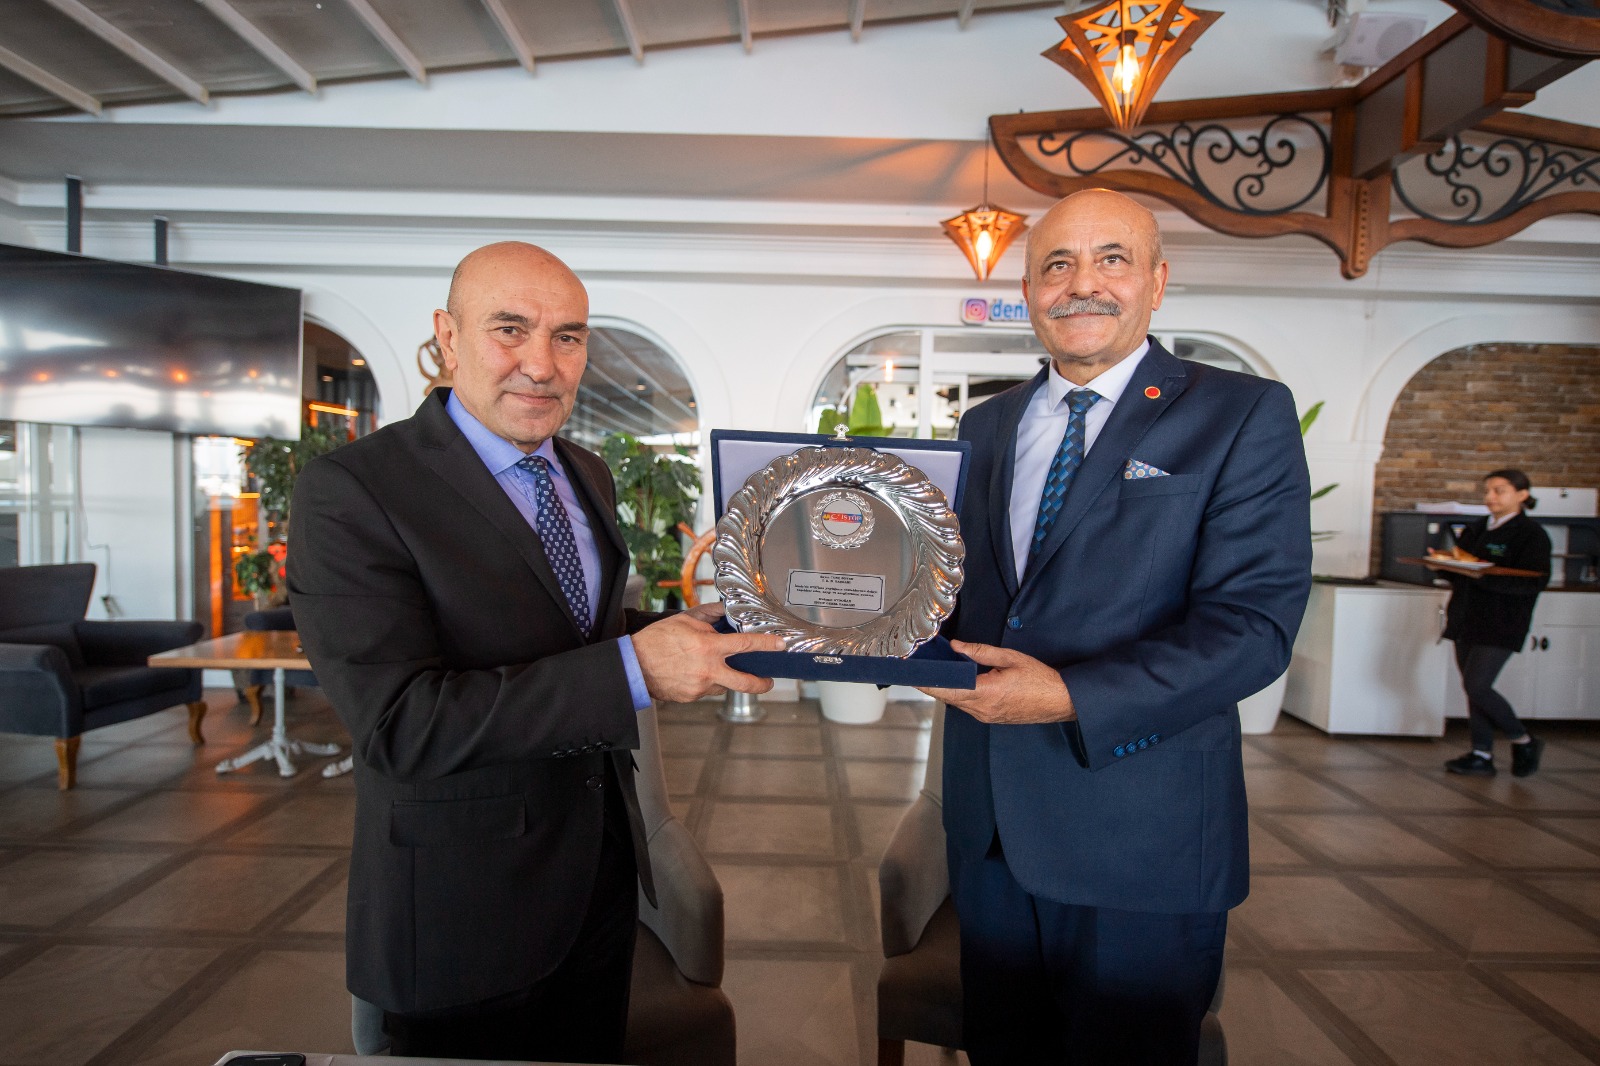 Başkan Soyer: “İzmir Türkiye’nin her yerinden çok daha güçlü ve zengin”